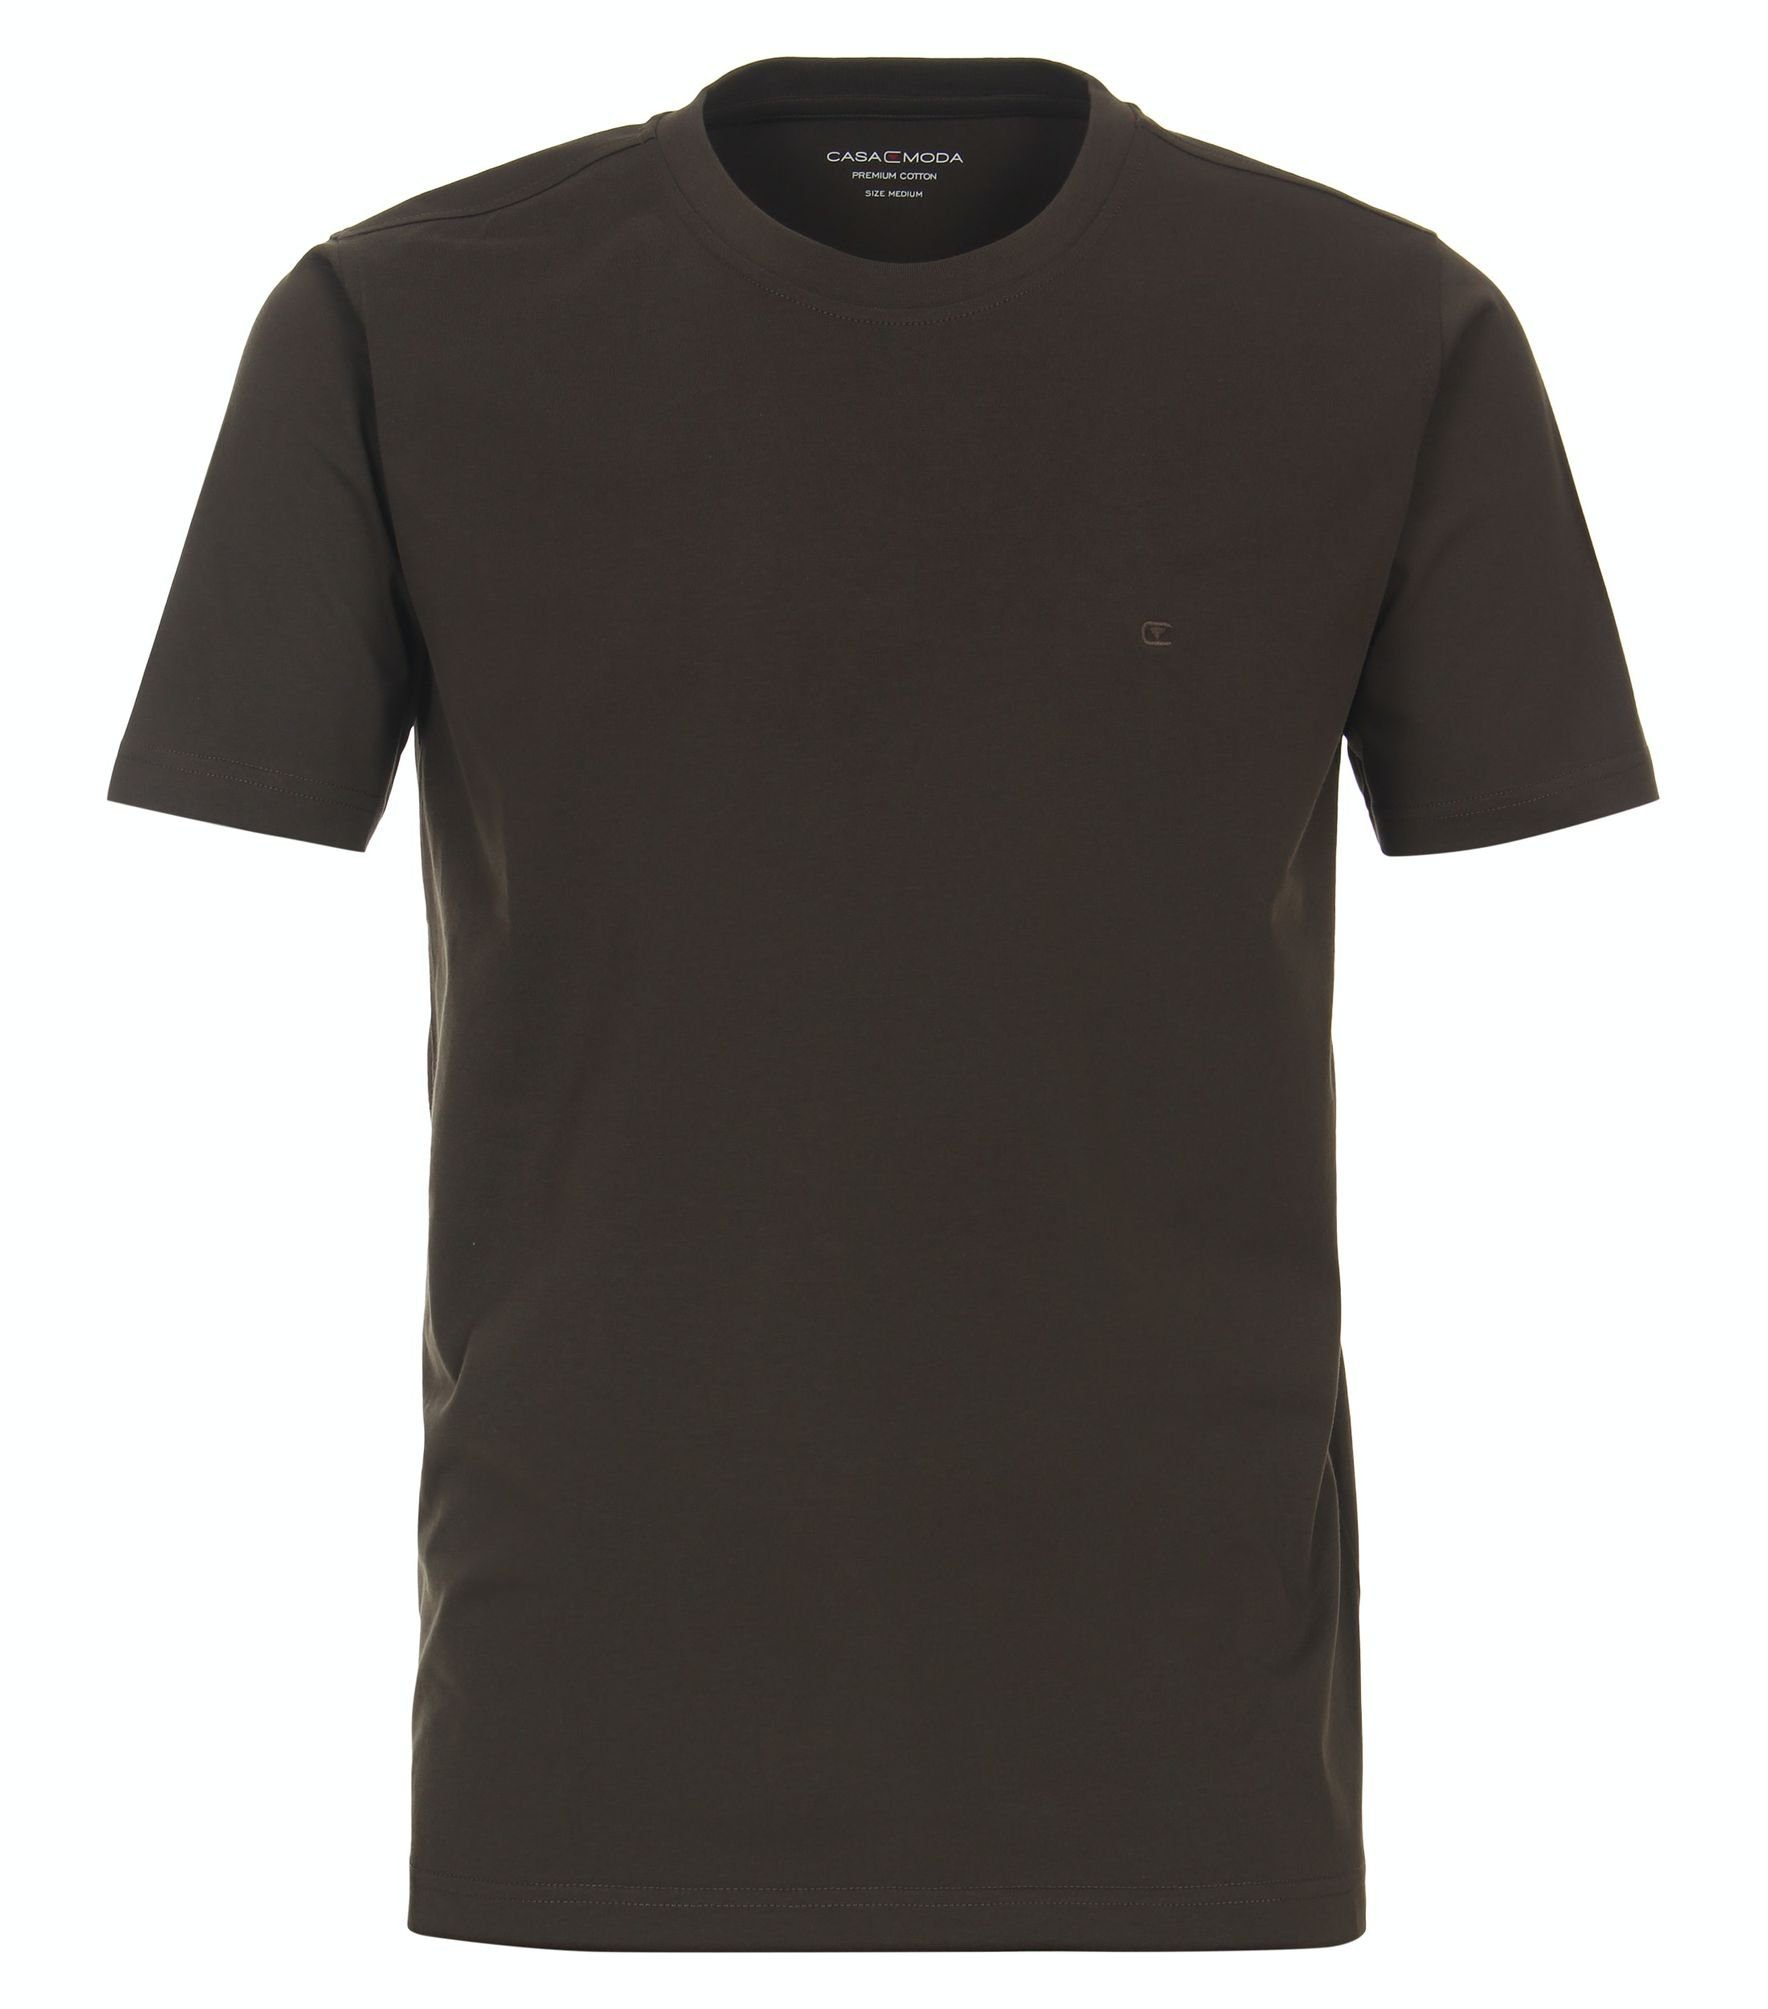 Gelb unifarben 004200 T-Shirt T-Shirt CASAMODA (539)